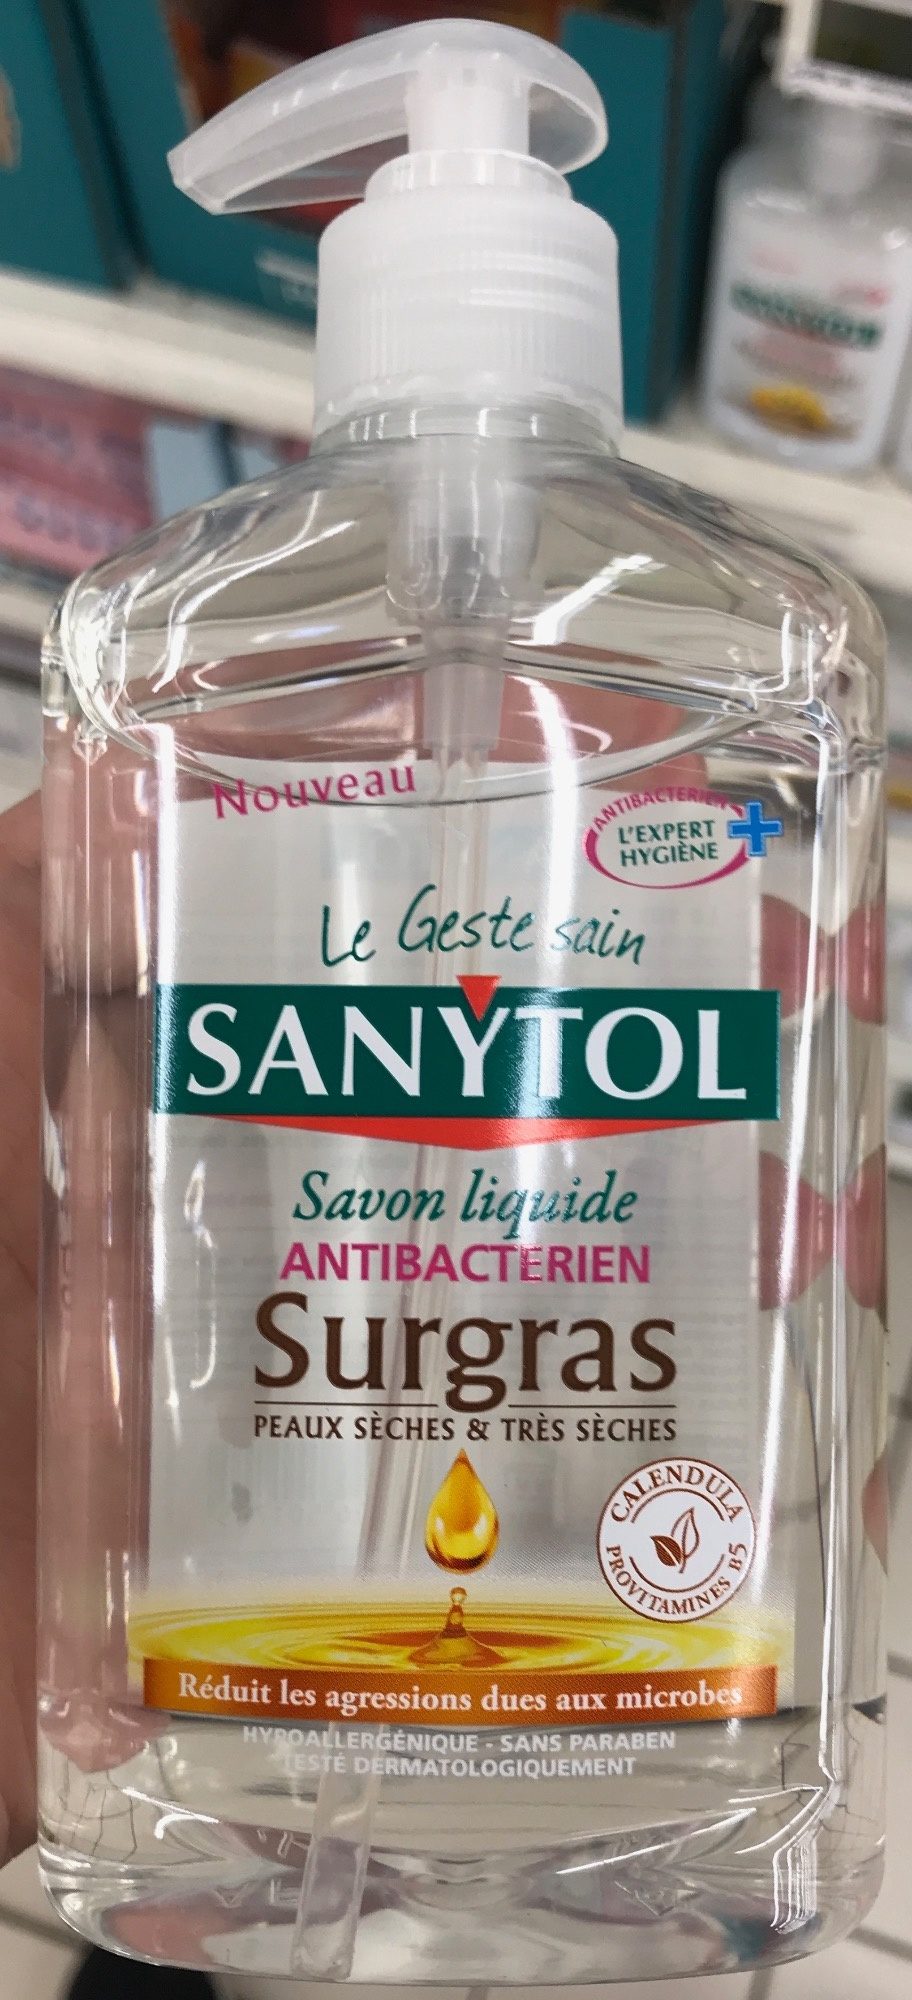 Savon liquide antibactérien surgras - Product - fr